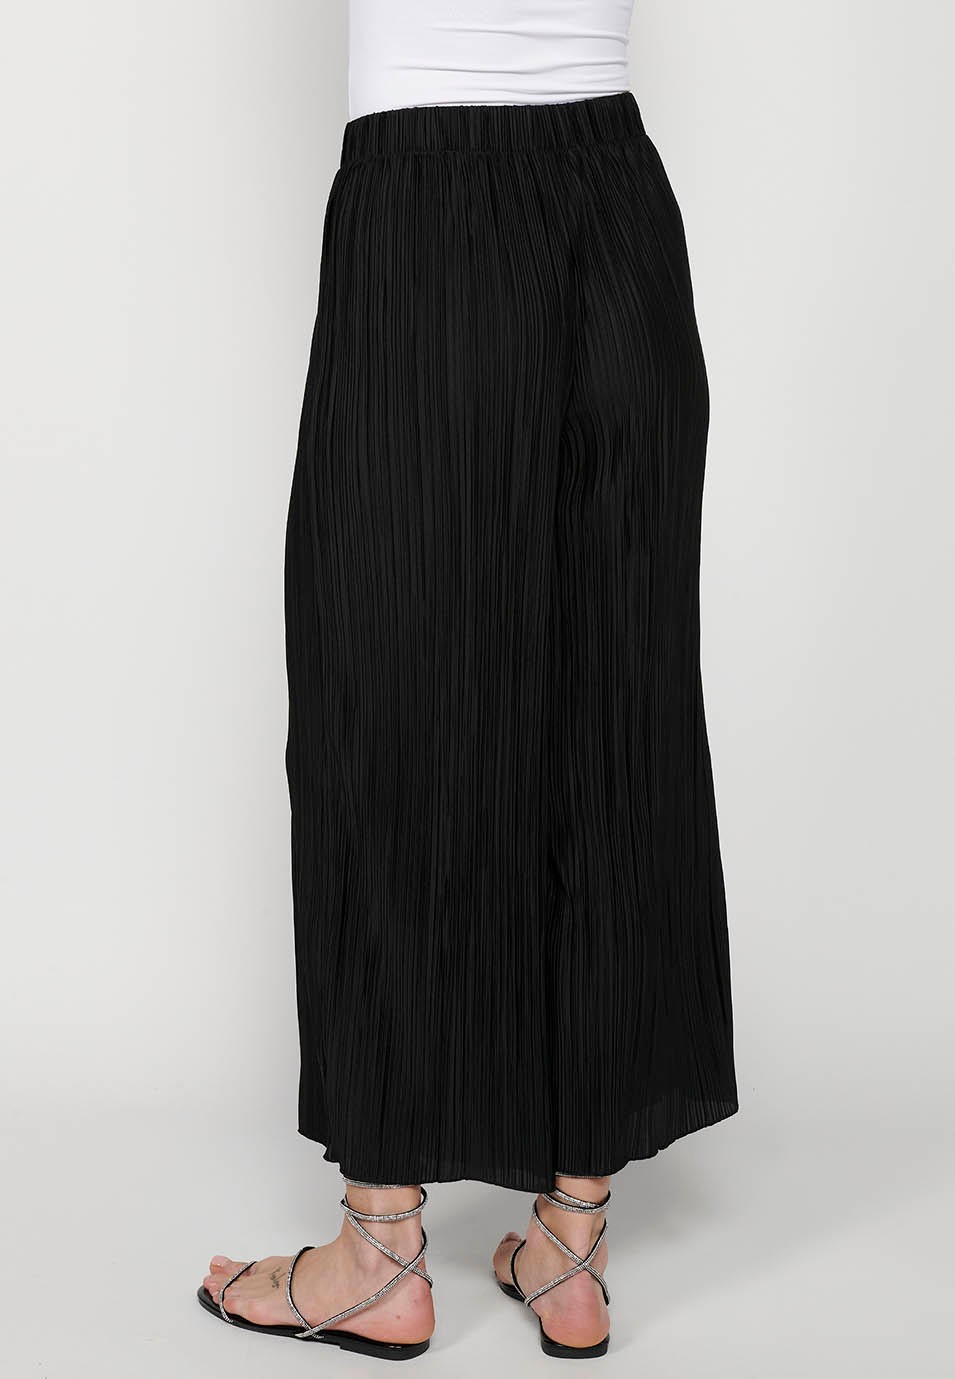 Leichte lange Hose, gummierter Bund, schwarzer Faltenstoff für Damen